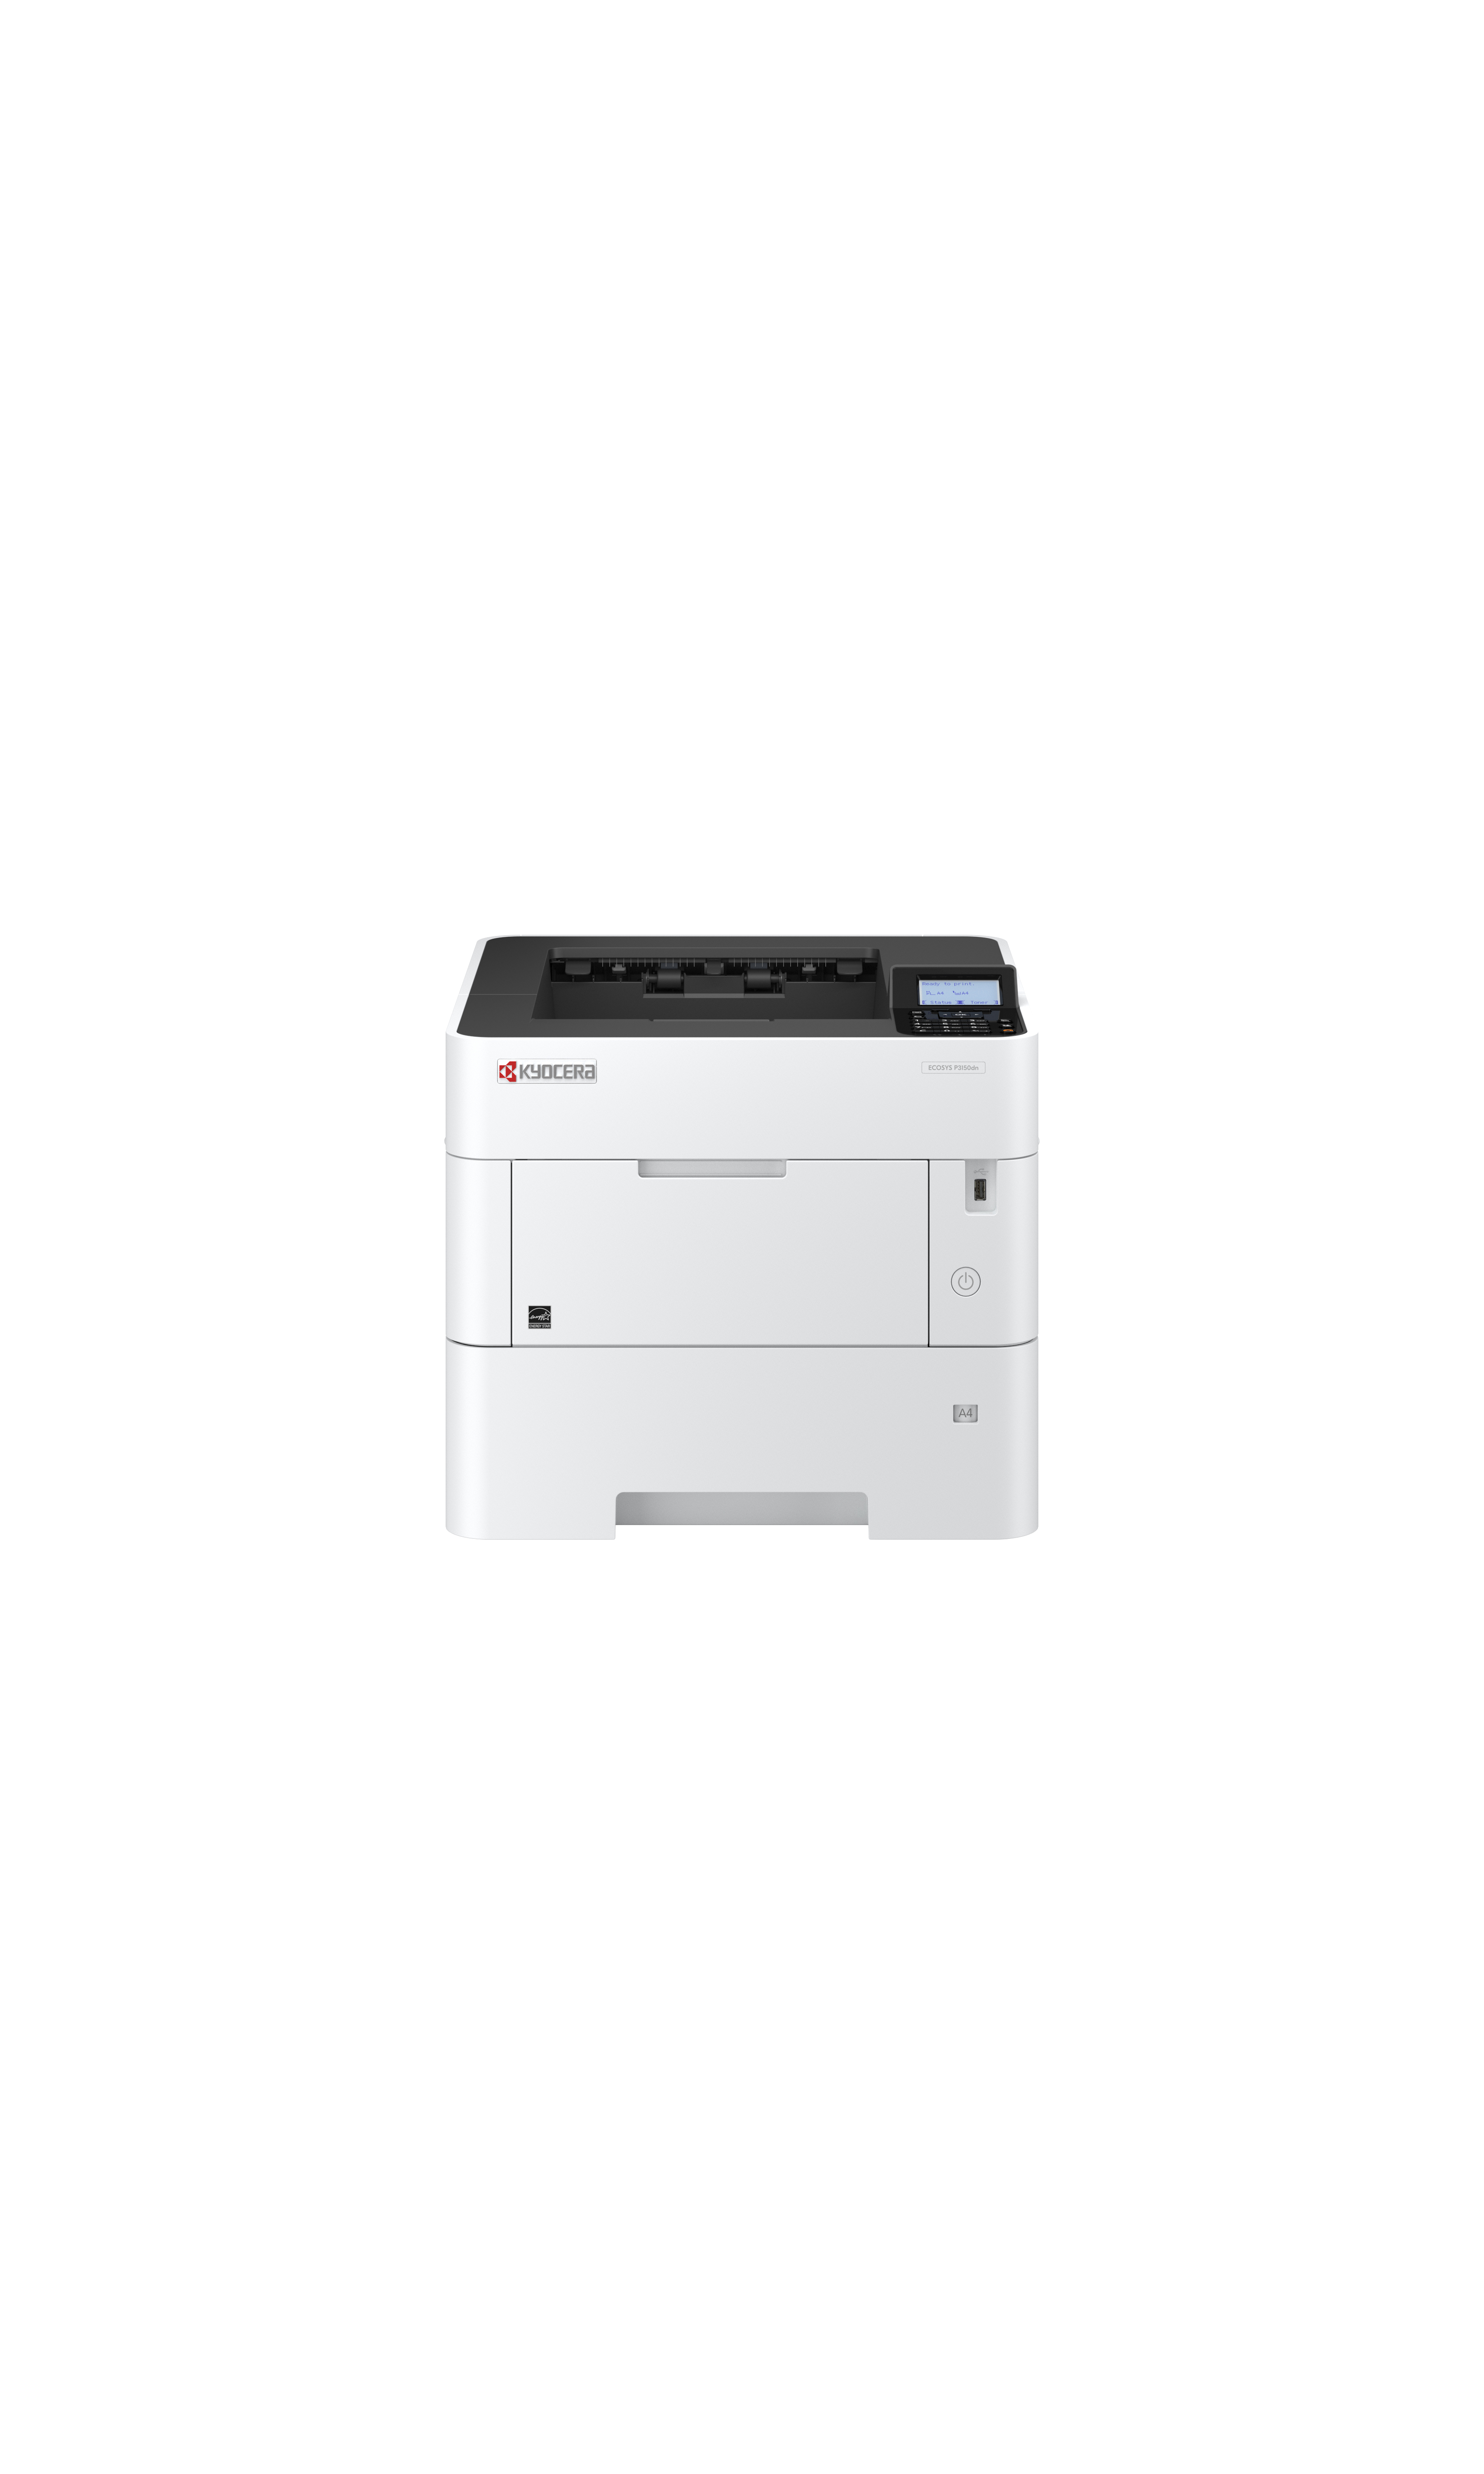 KYOCERA 870B61102TS3NL2 laser printer